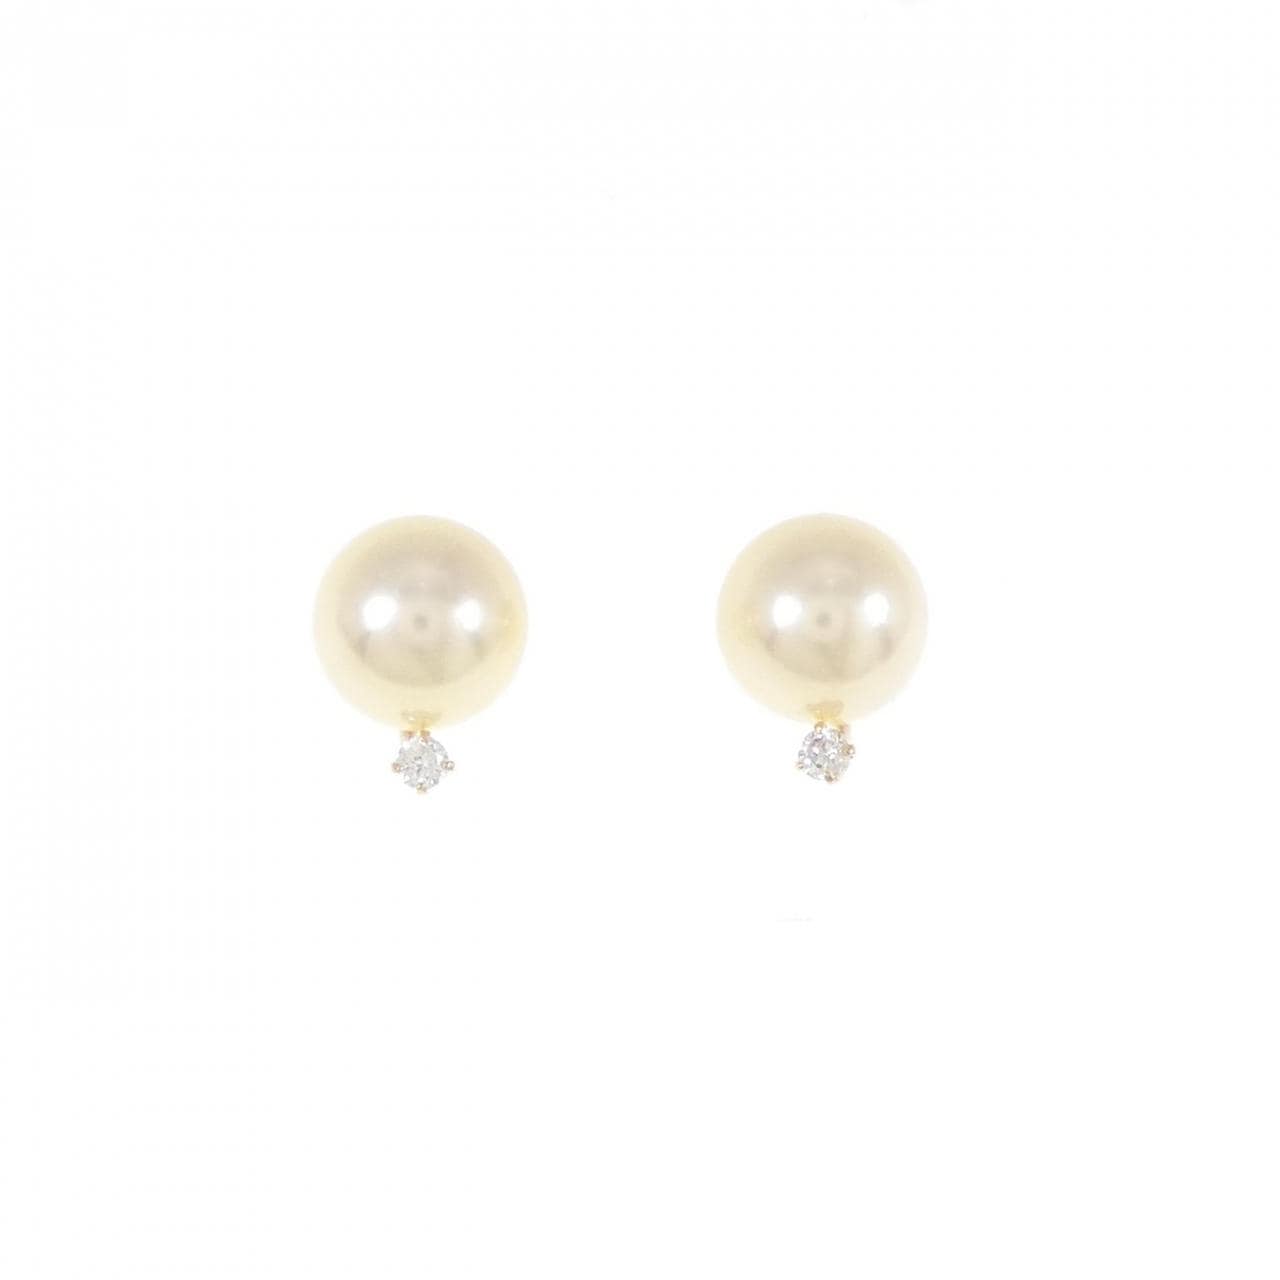 K18YG Akoya pearl earrings 6.5mm